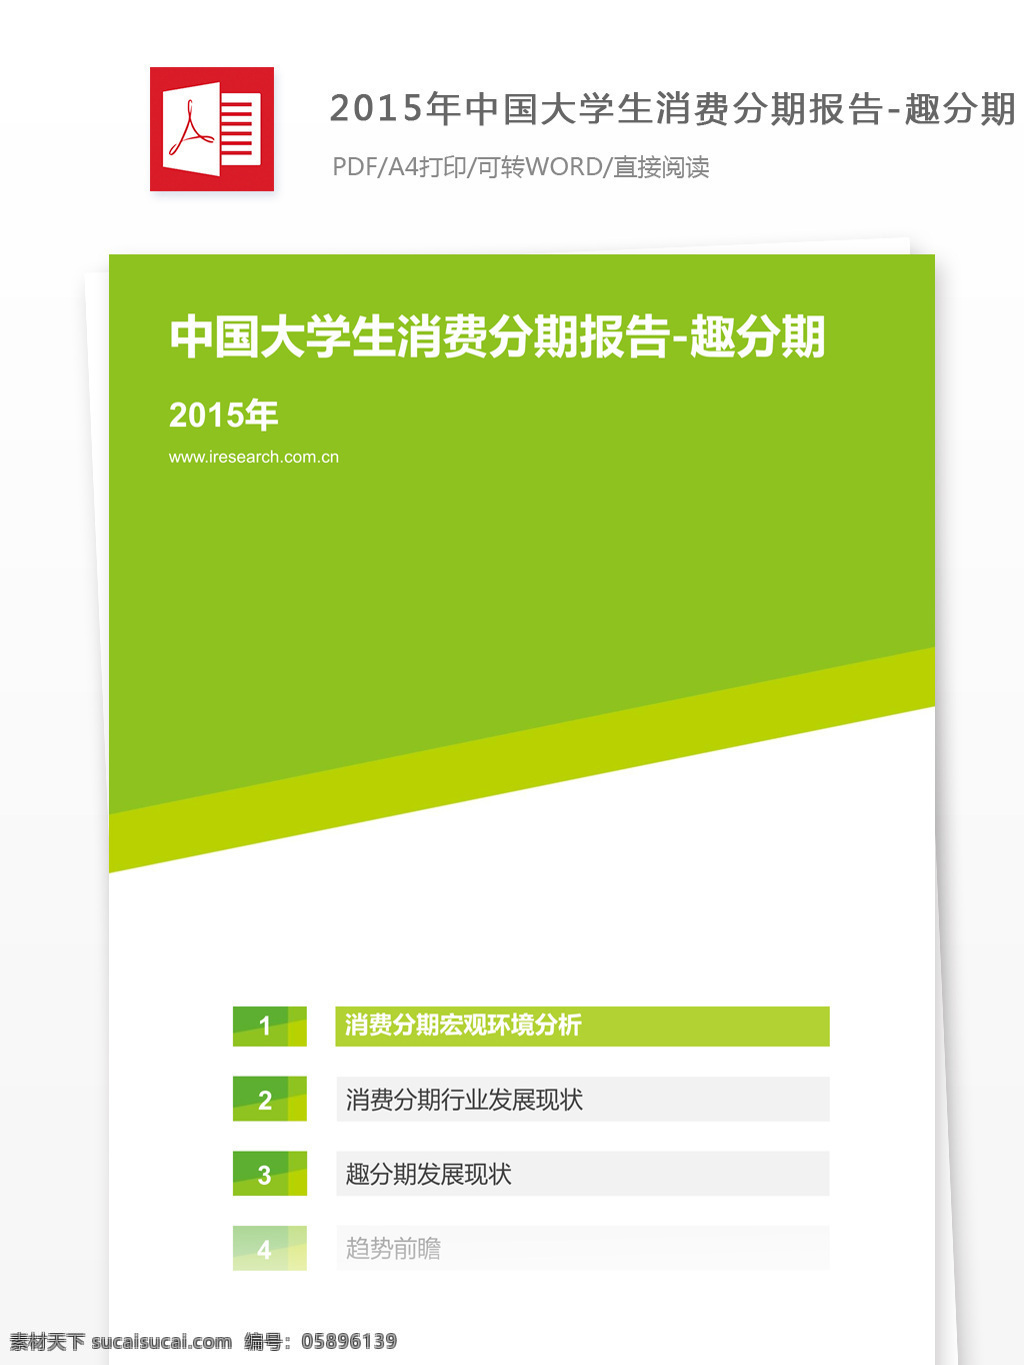 2015 年中 国大学 生 消费 分期 报告 中国大学生 消费品报告 趣分期 行业分析